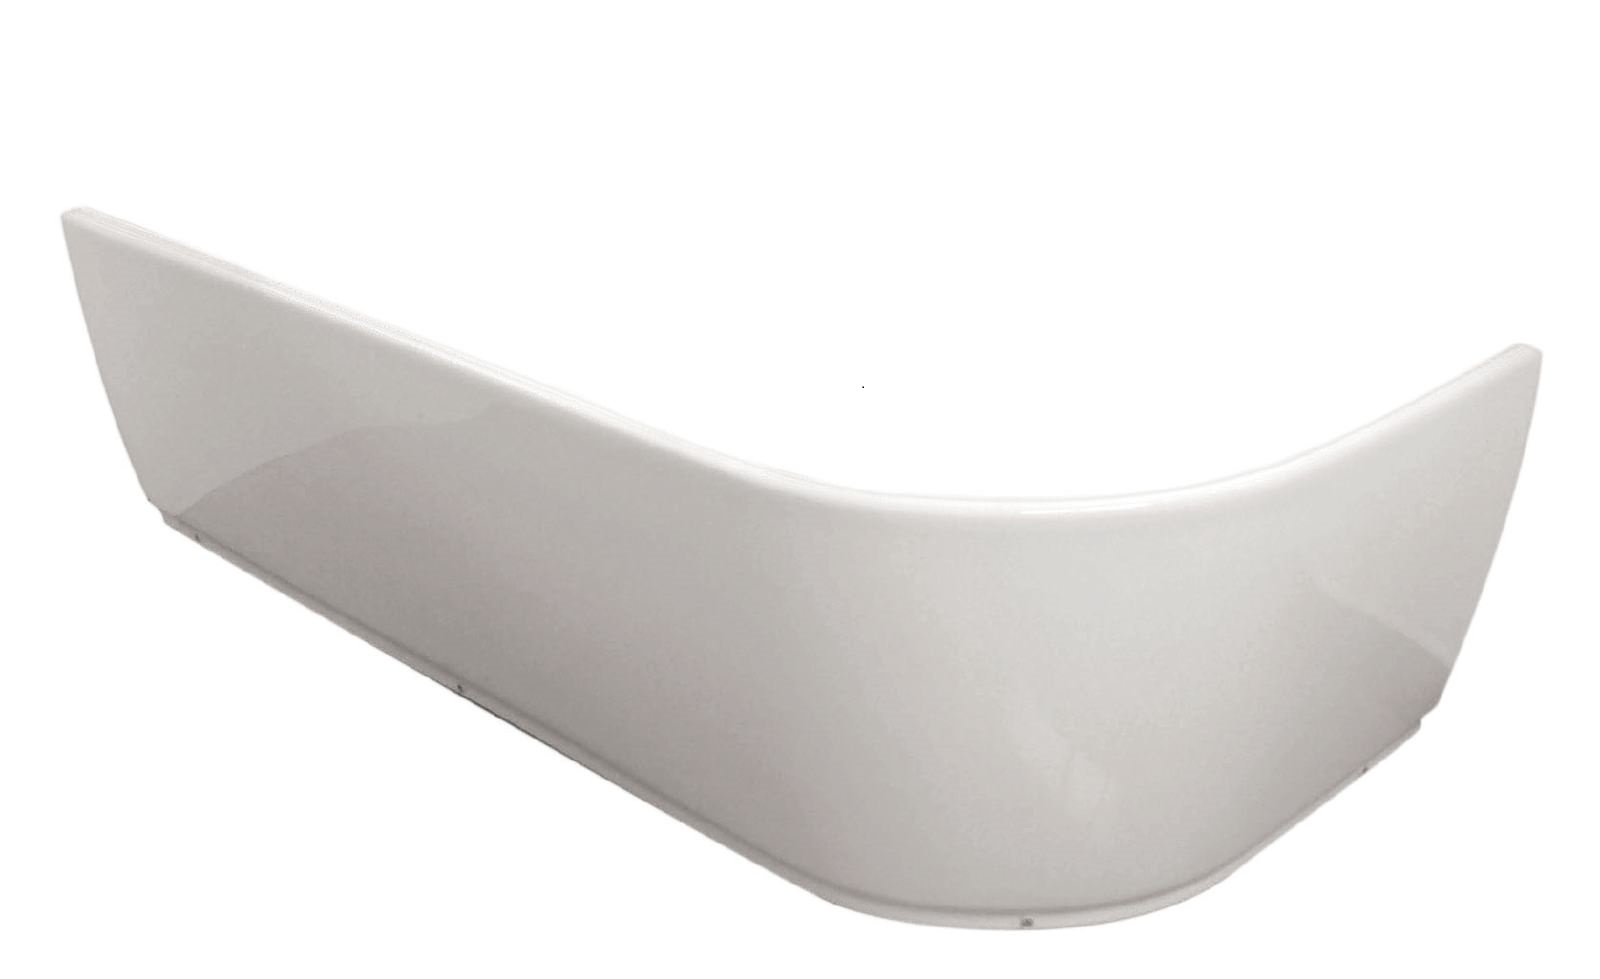 Wannenschürze Honest aus Acryl in Weiß, für abgerundete Badewannen in linker Ausführung, 180 x 80 cm